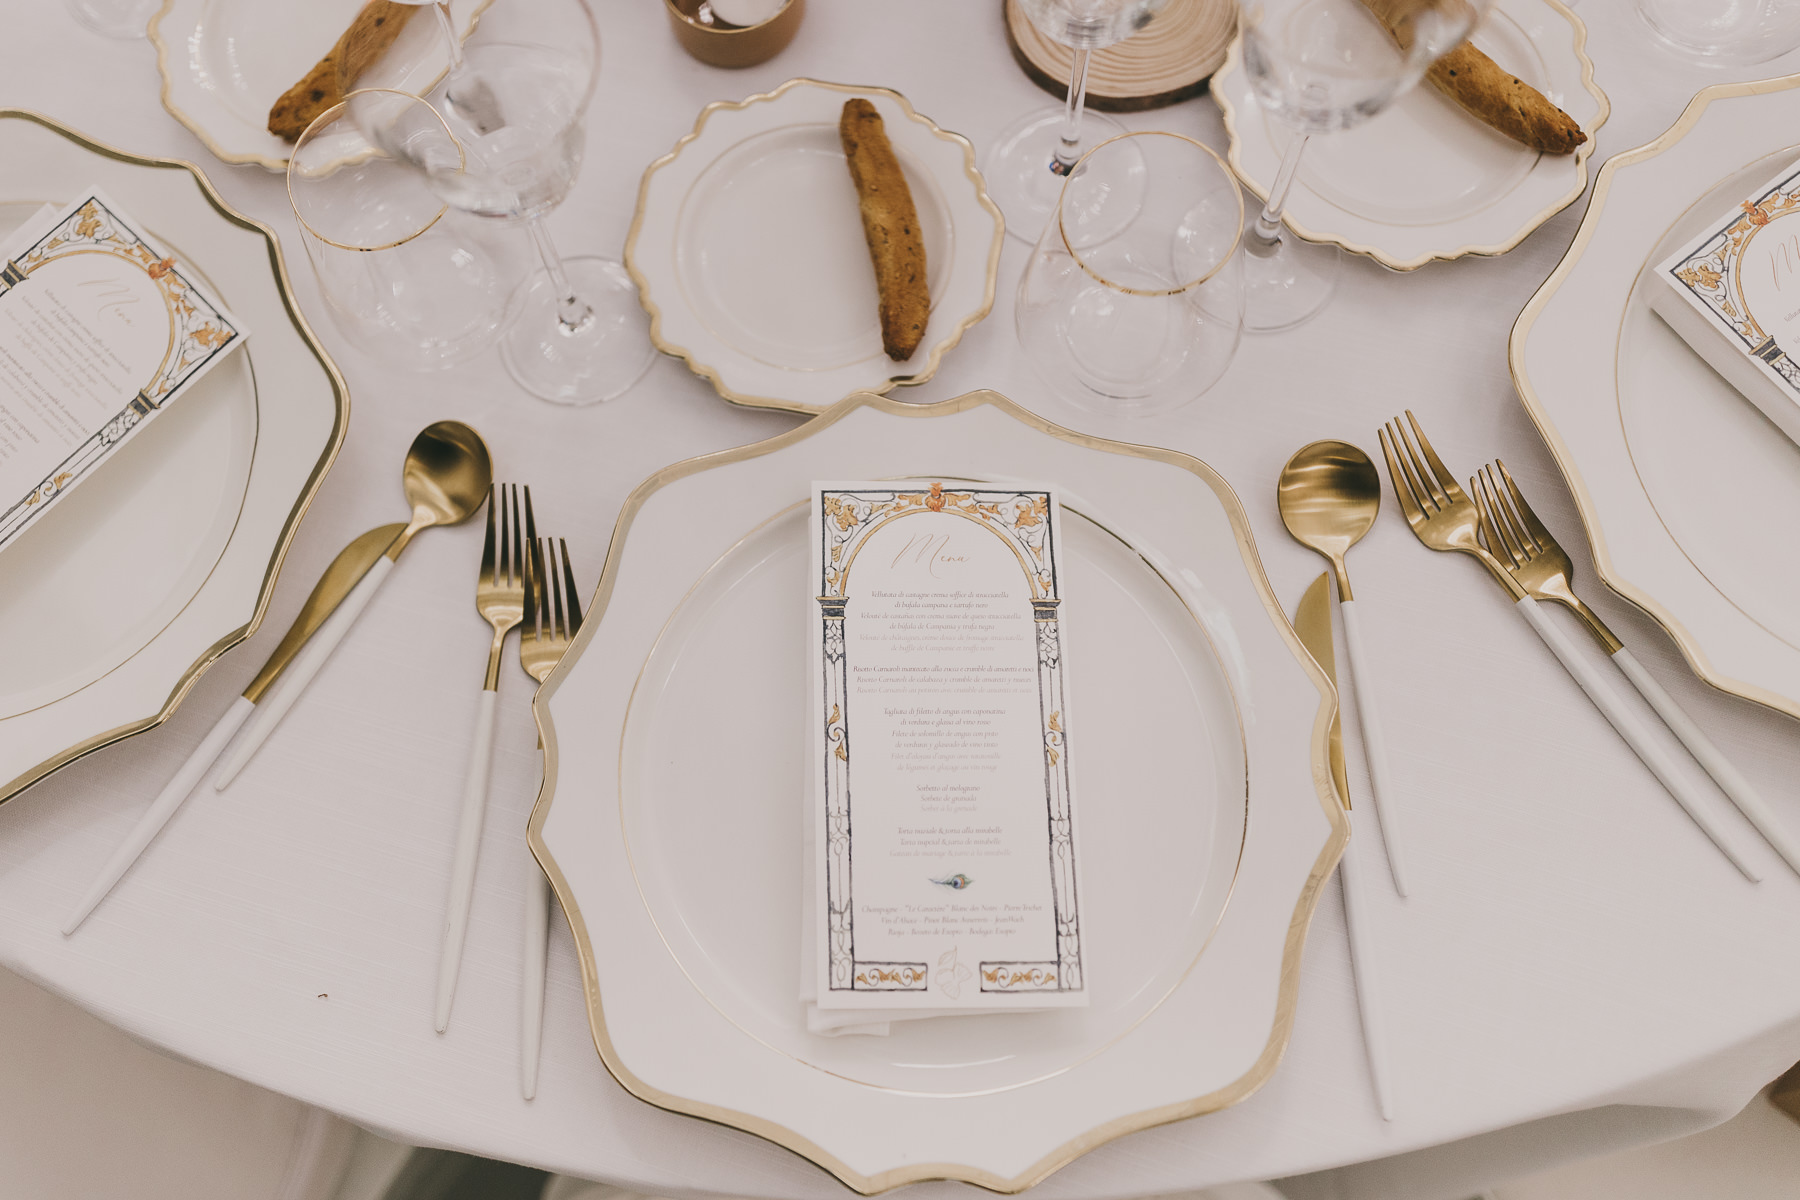 Mesa nupcial decorada con vajilla y elementos dorados. Fotografía de boda por Love Wanderers. Wedding Planner Martin & Gutfreund